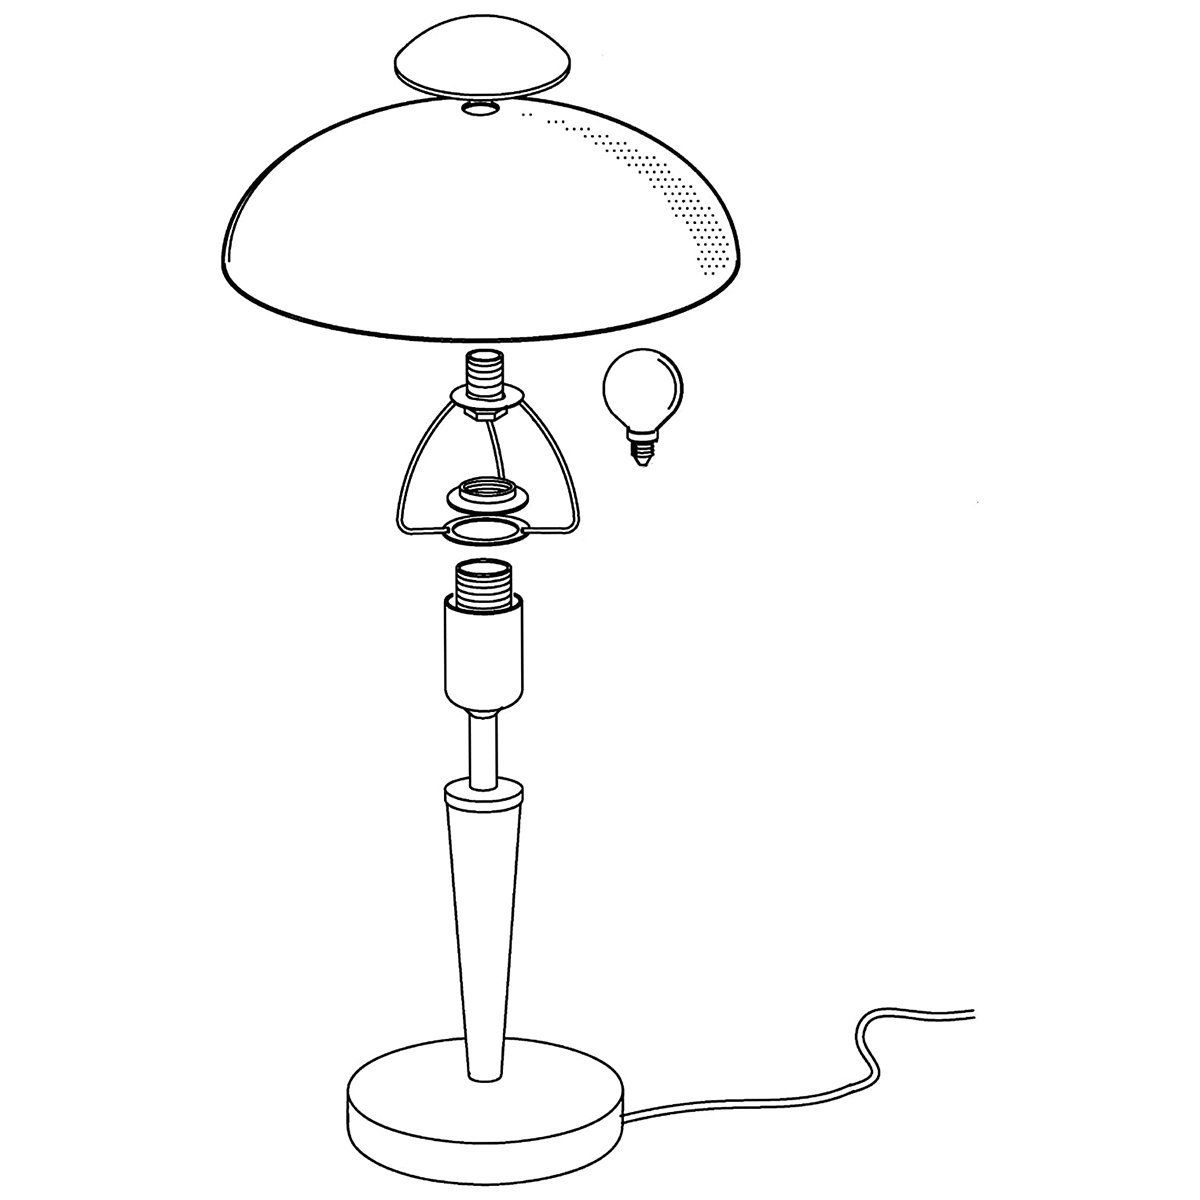 Lampe à variateur tactile Led JAP blanche en nickel satiné - Keria